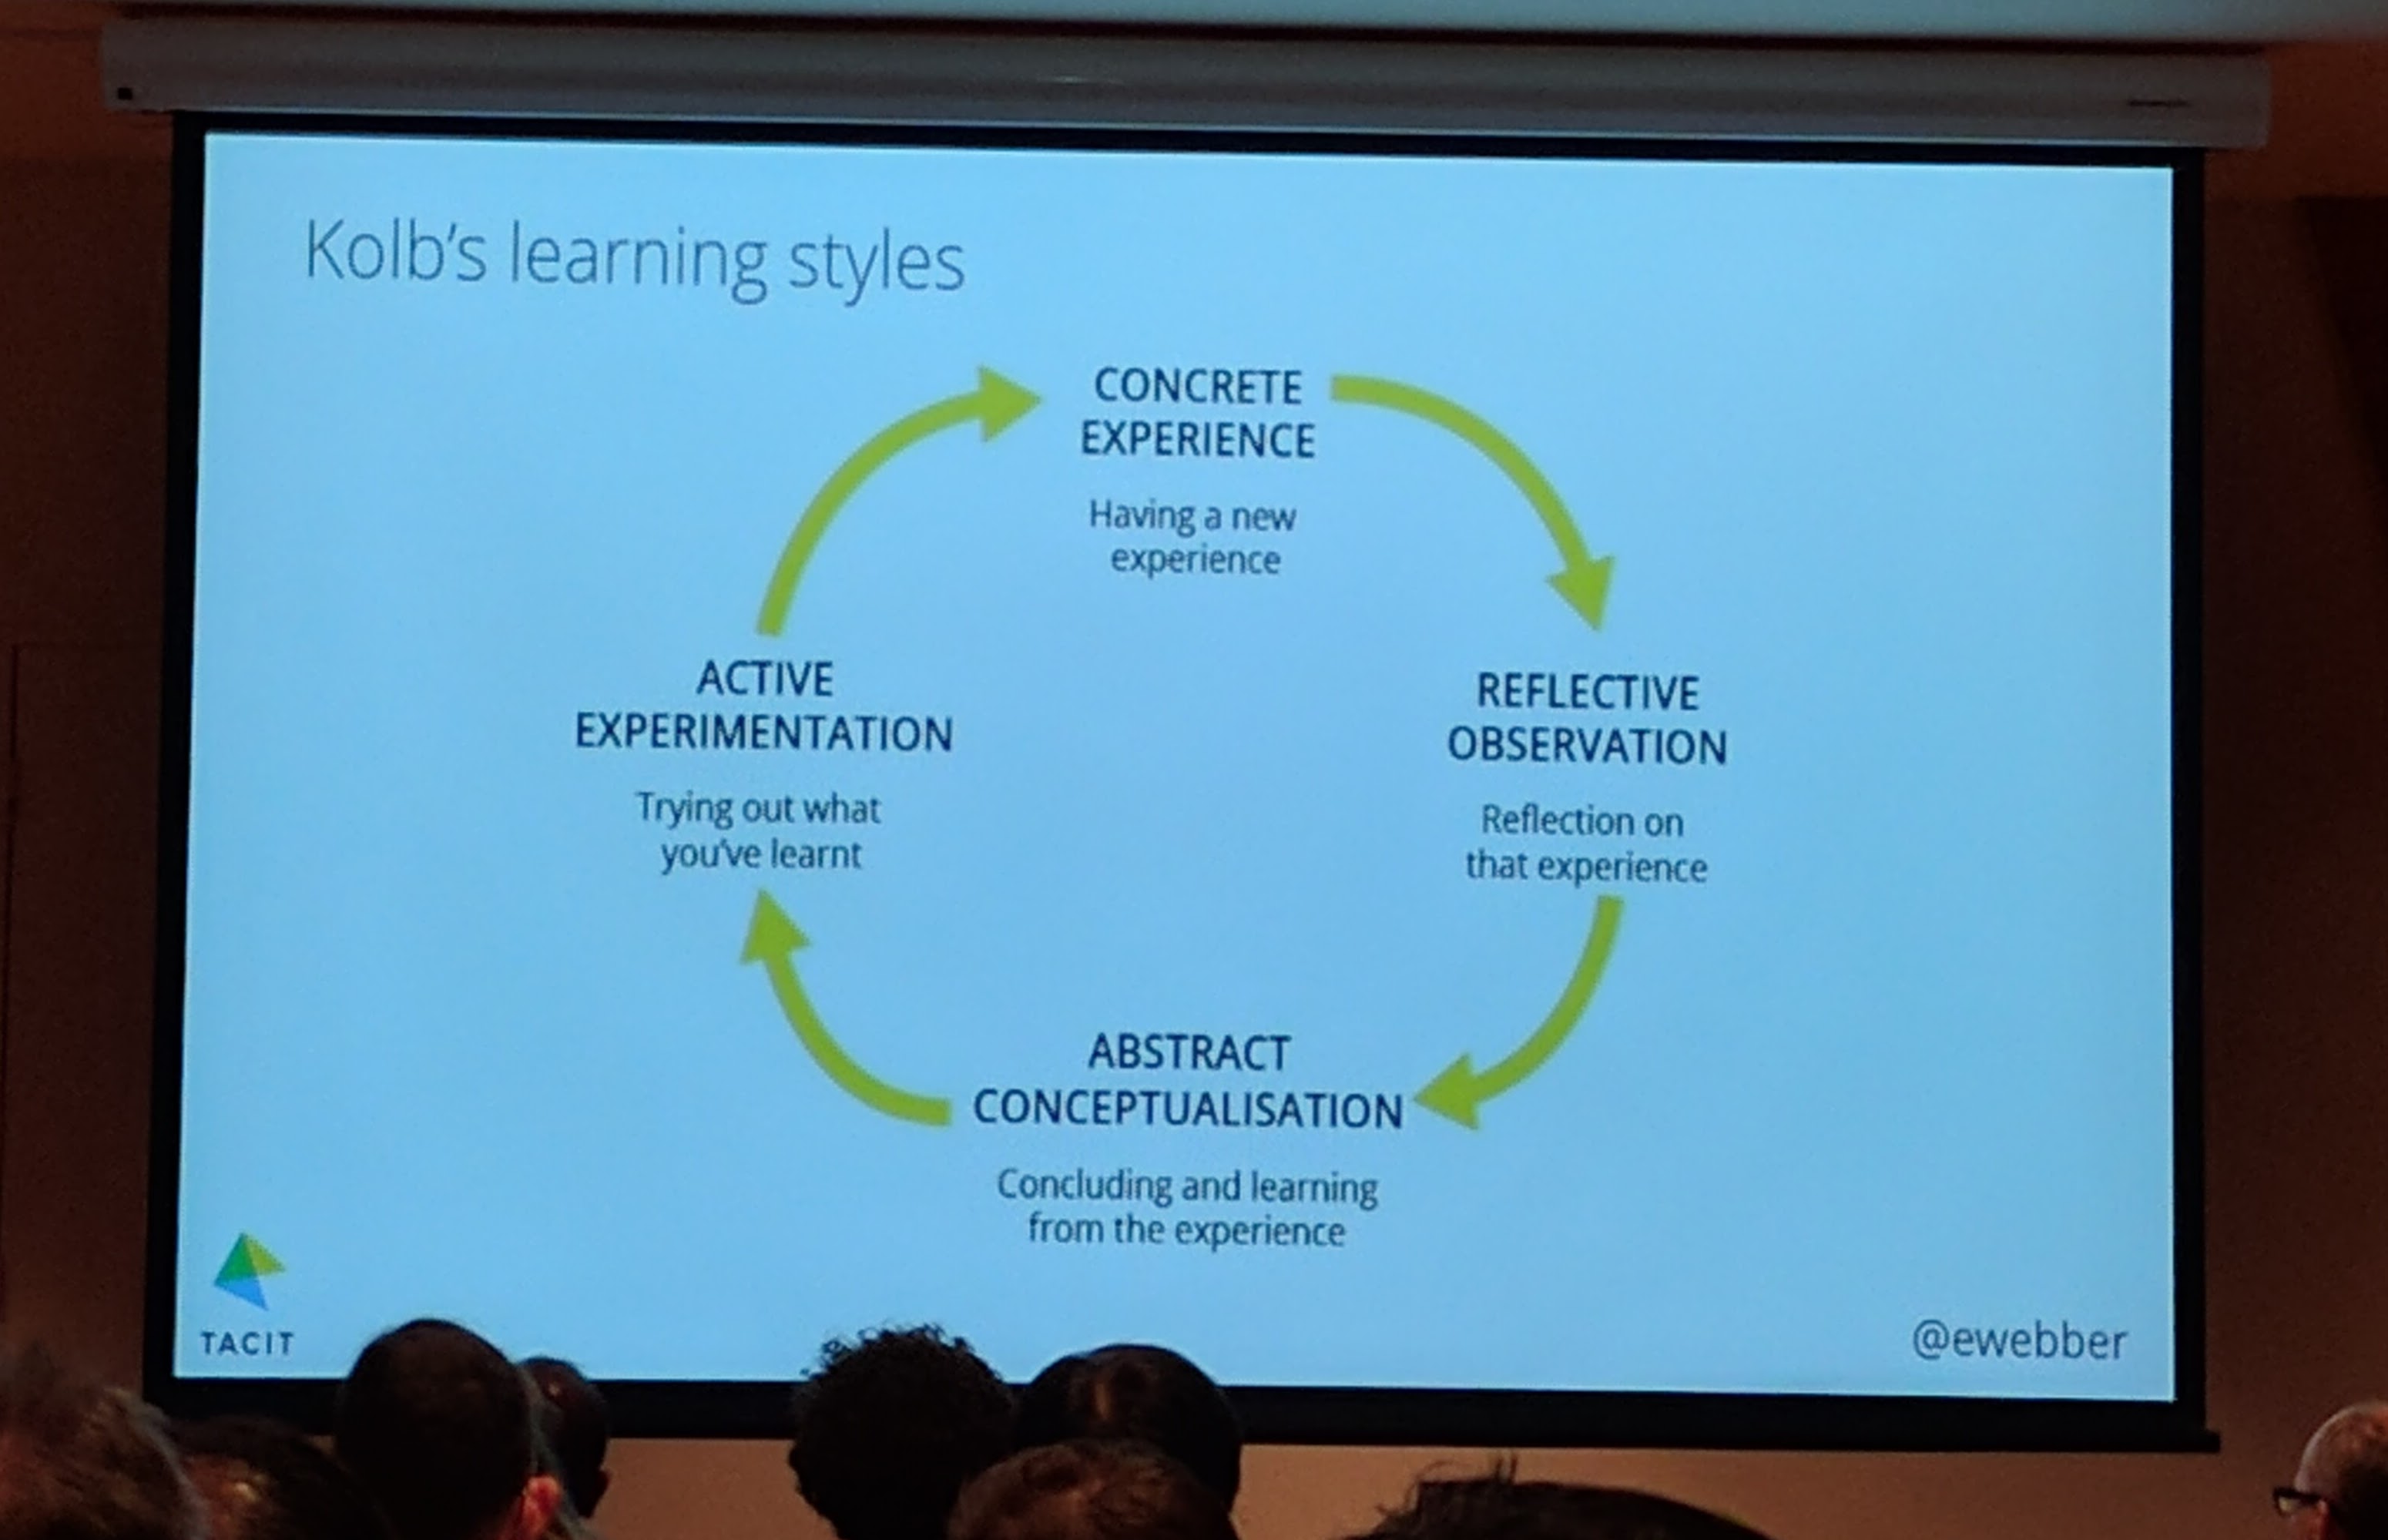 Kolb’s learning styles